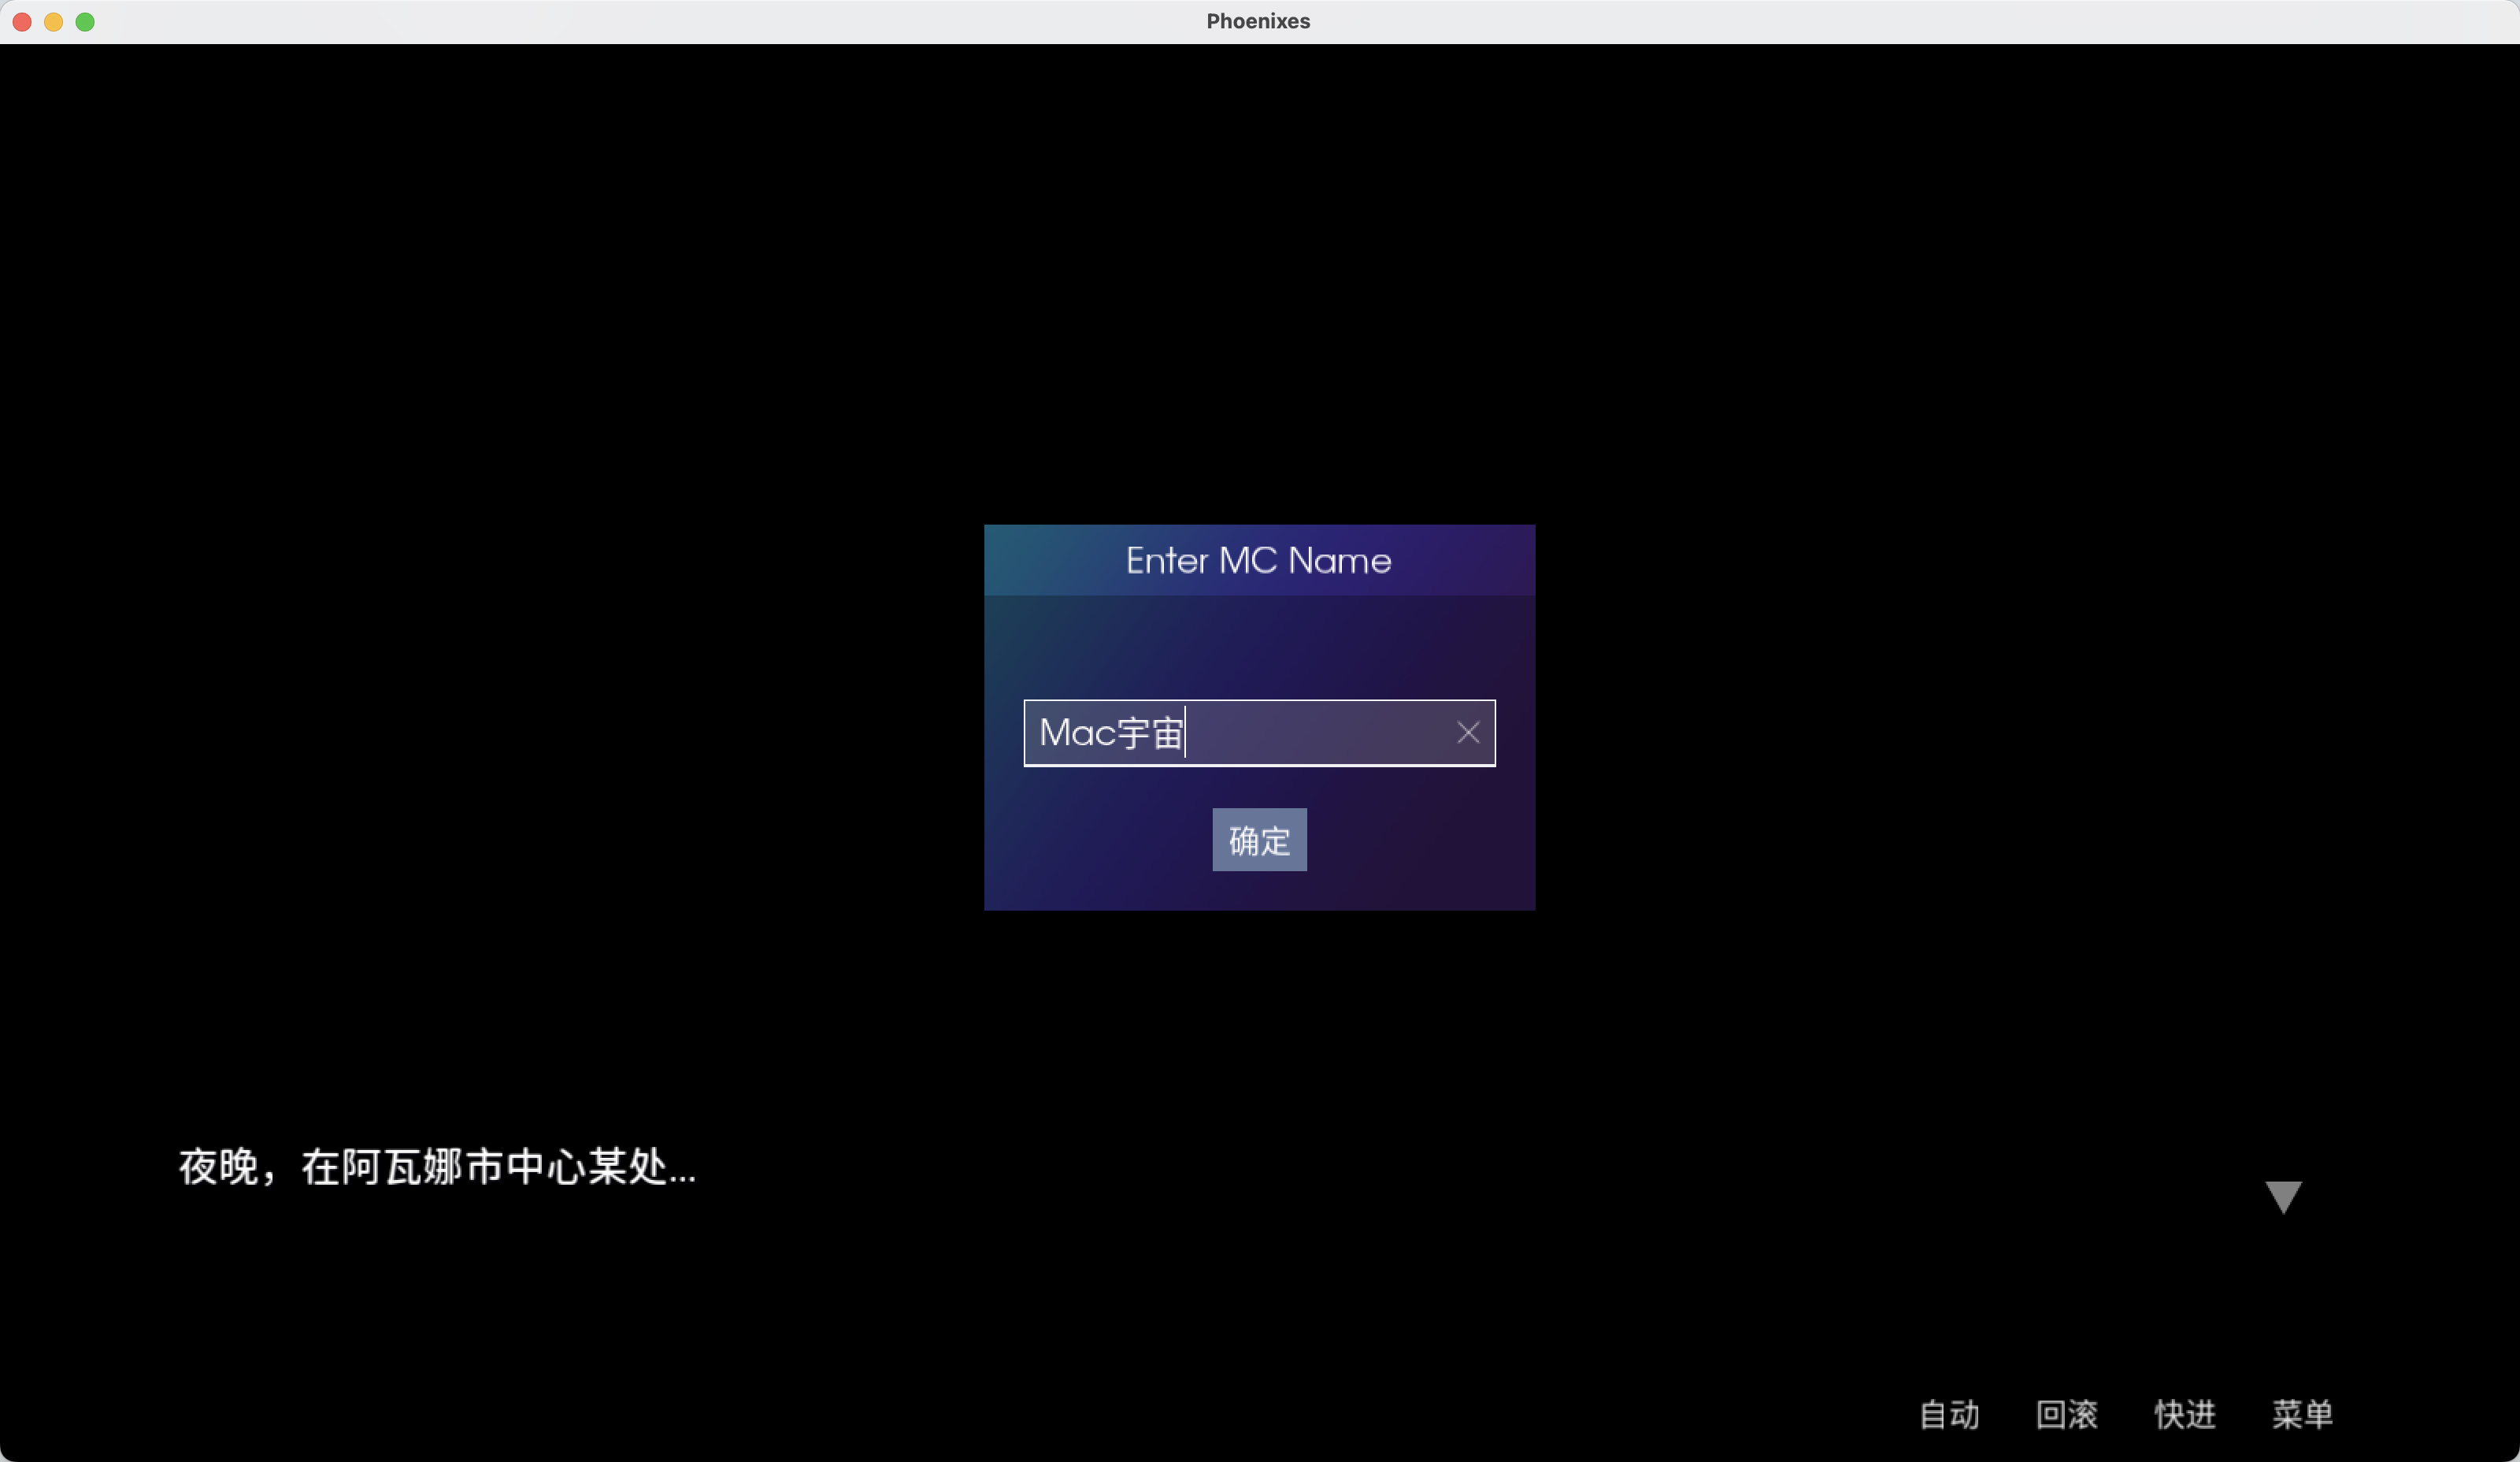 凤凰 for Mac Phoenixes v0.9 中文原生版 苹果电脑